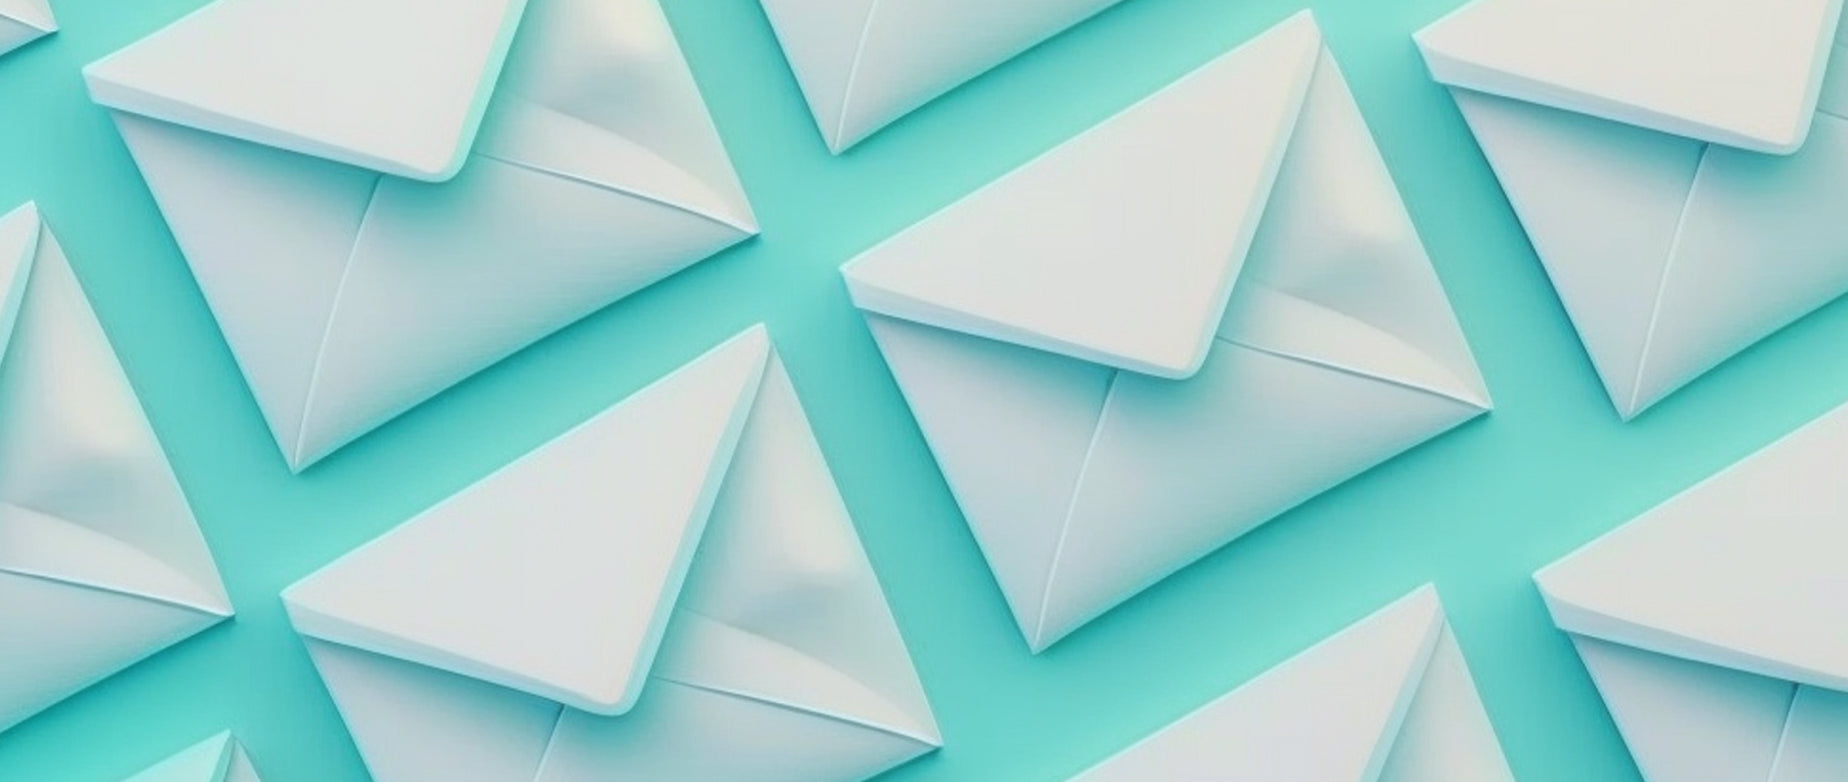 envelopes against a teal background; email segmentation